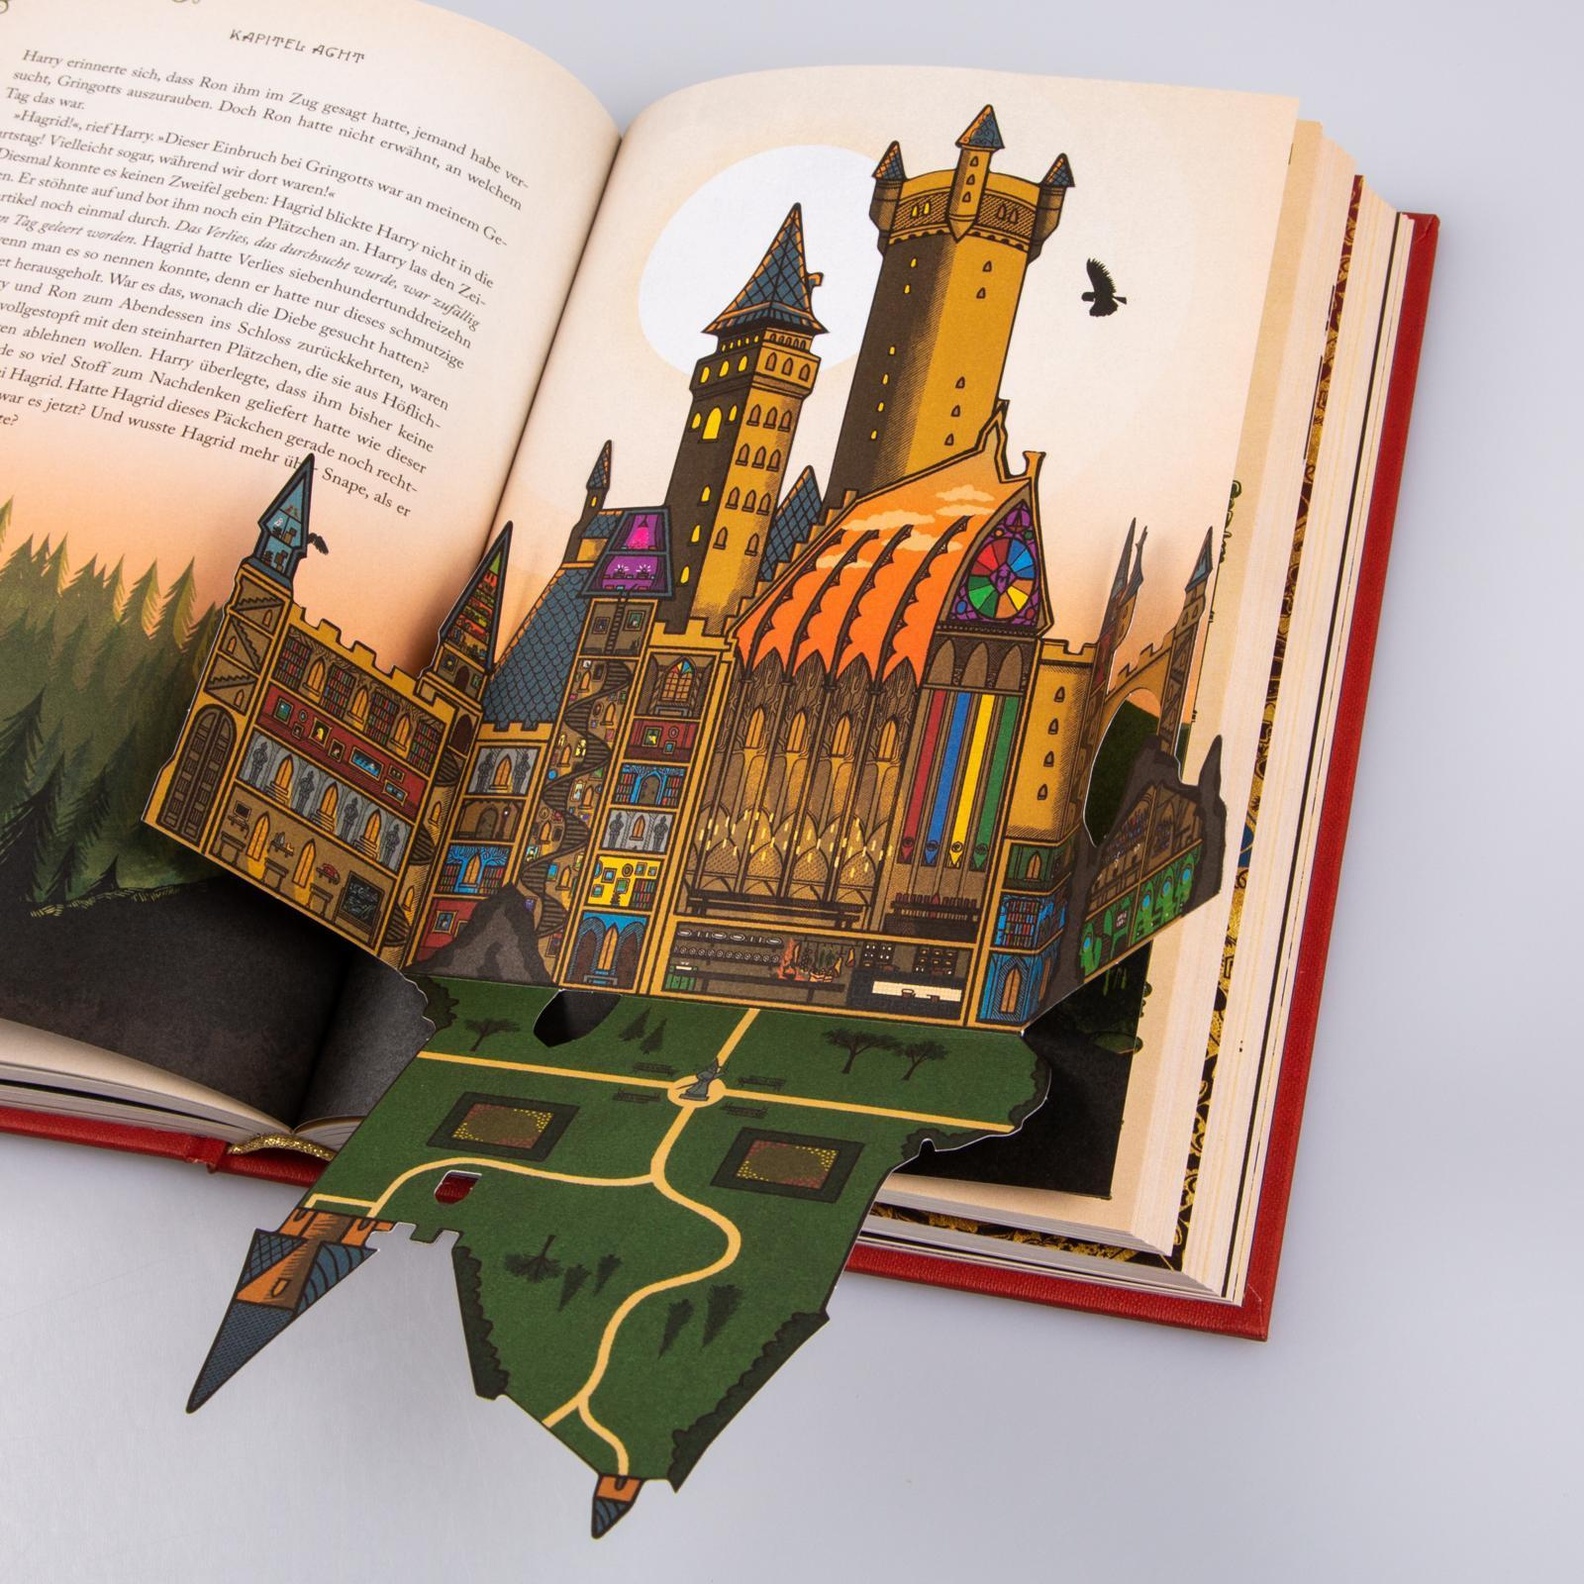 Harry Potter und der Stein der Weisen MinaLima-Edition mit 3D